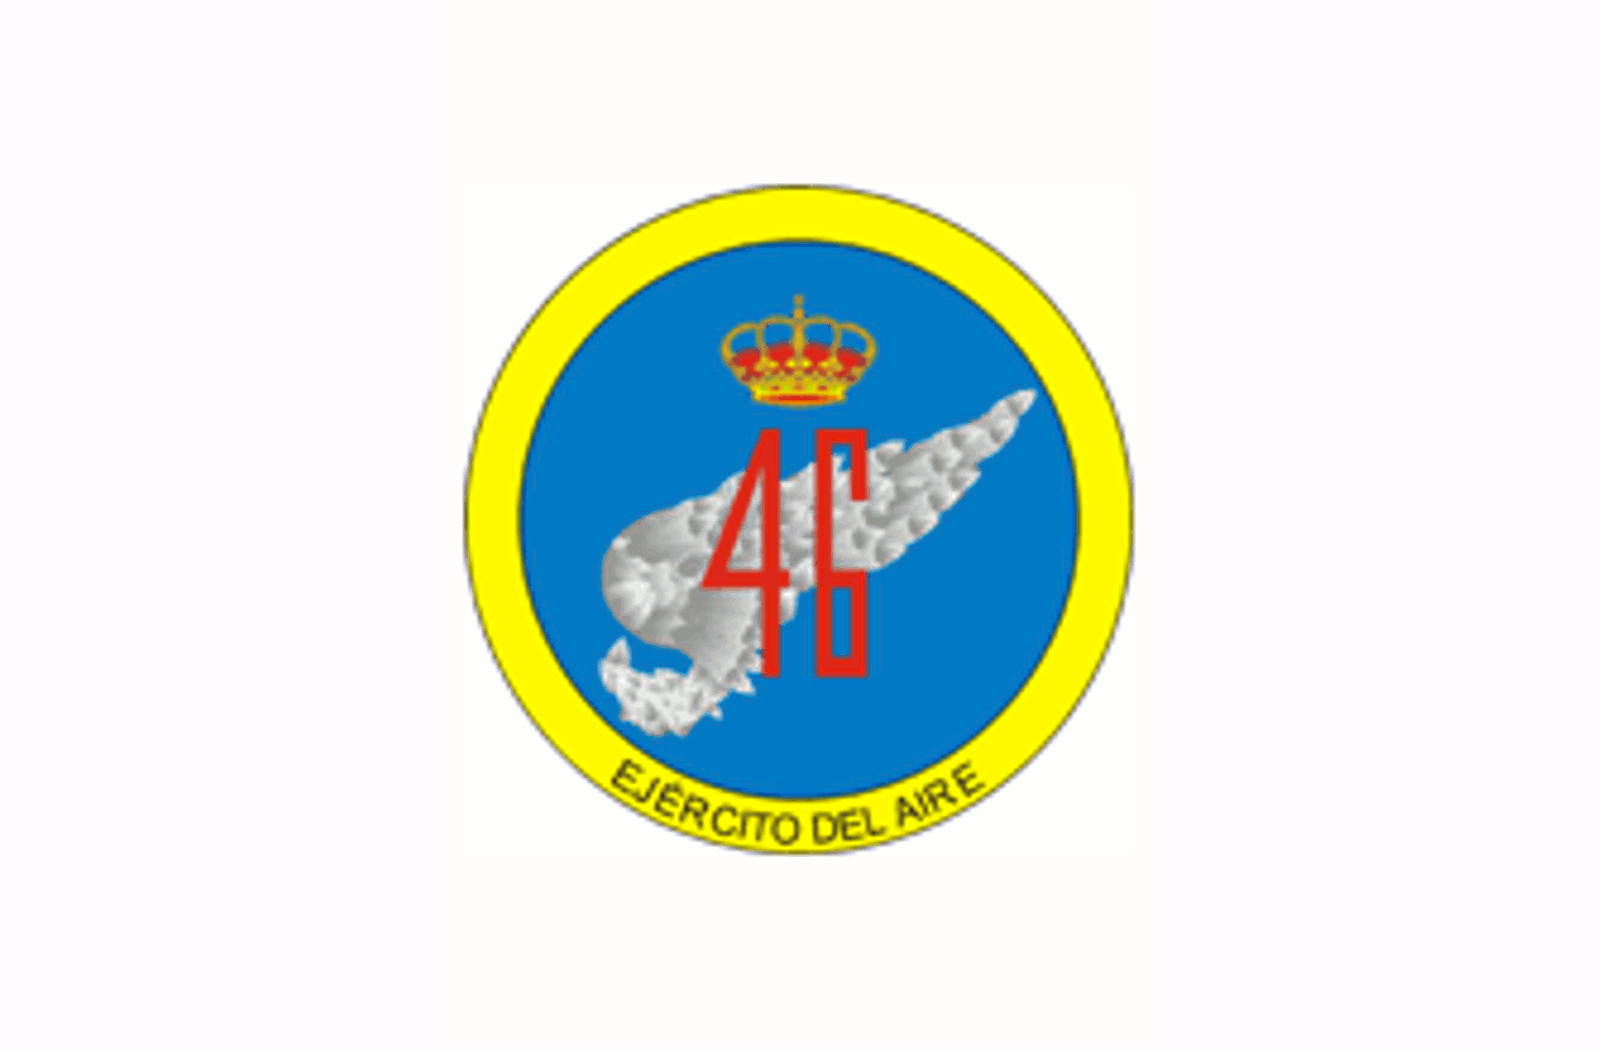 Emblema del Ala 46 del Ejército del Aire